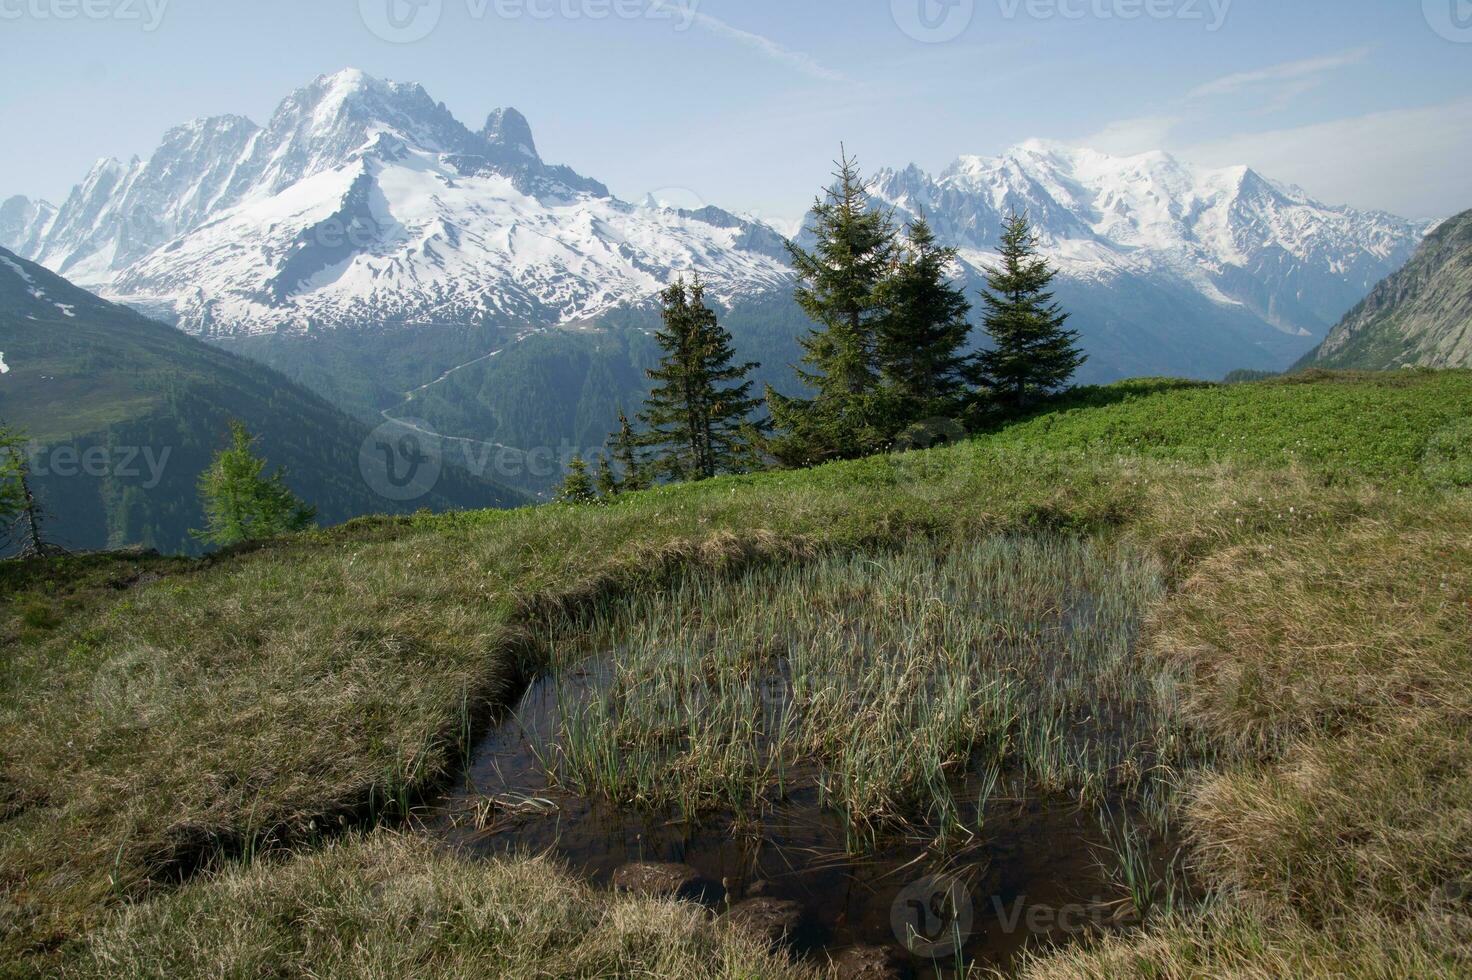 paysage de le français Alpes photo